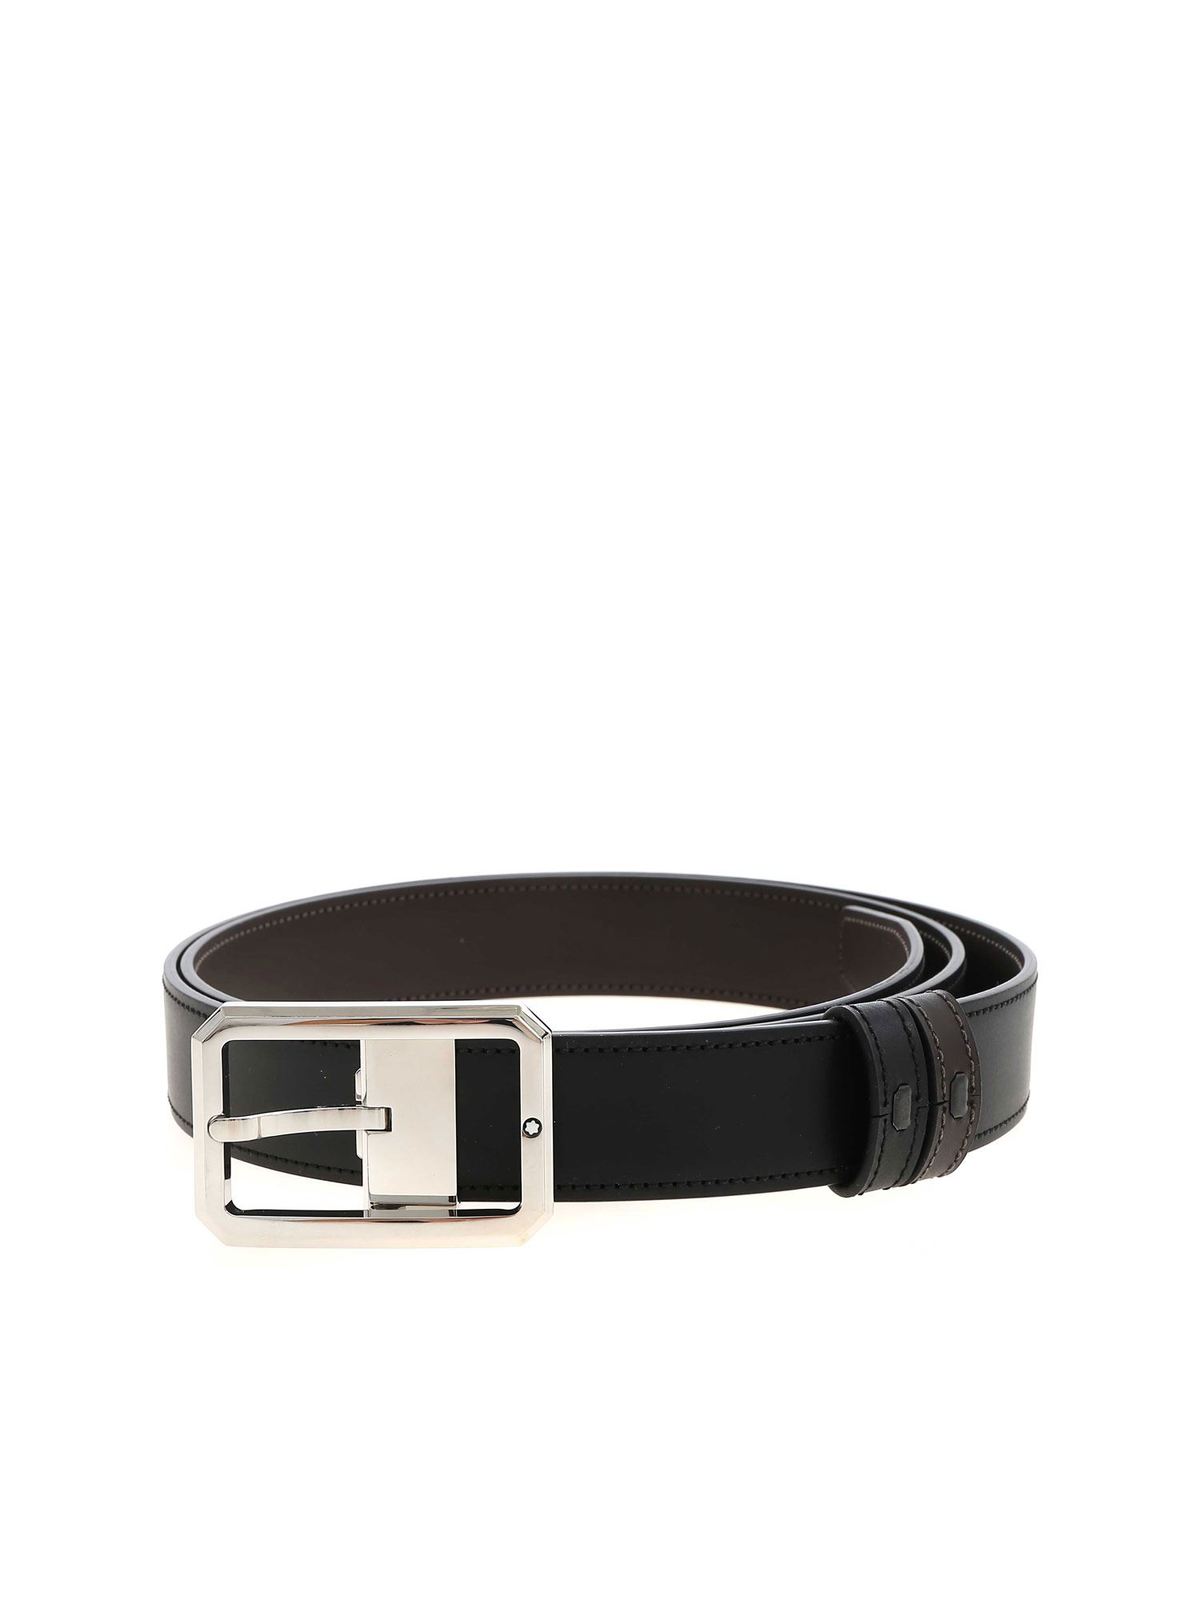 Belts Montblanc - Bicolor belt in brown and black - 128761 | iKRIX.com